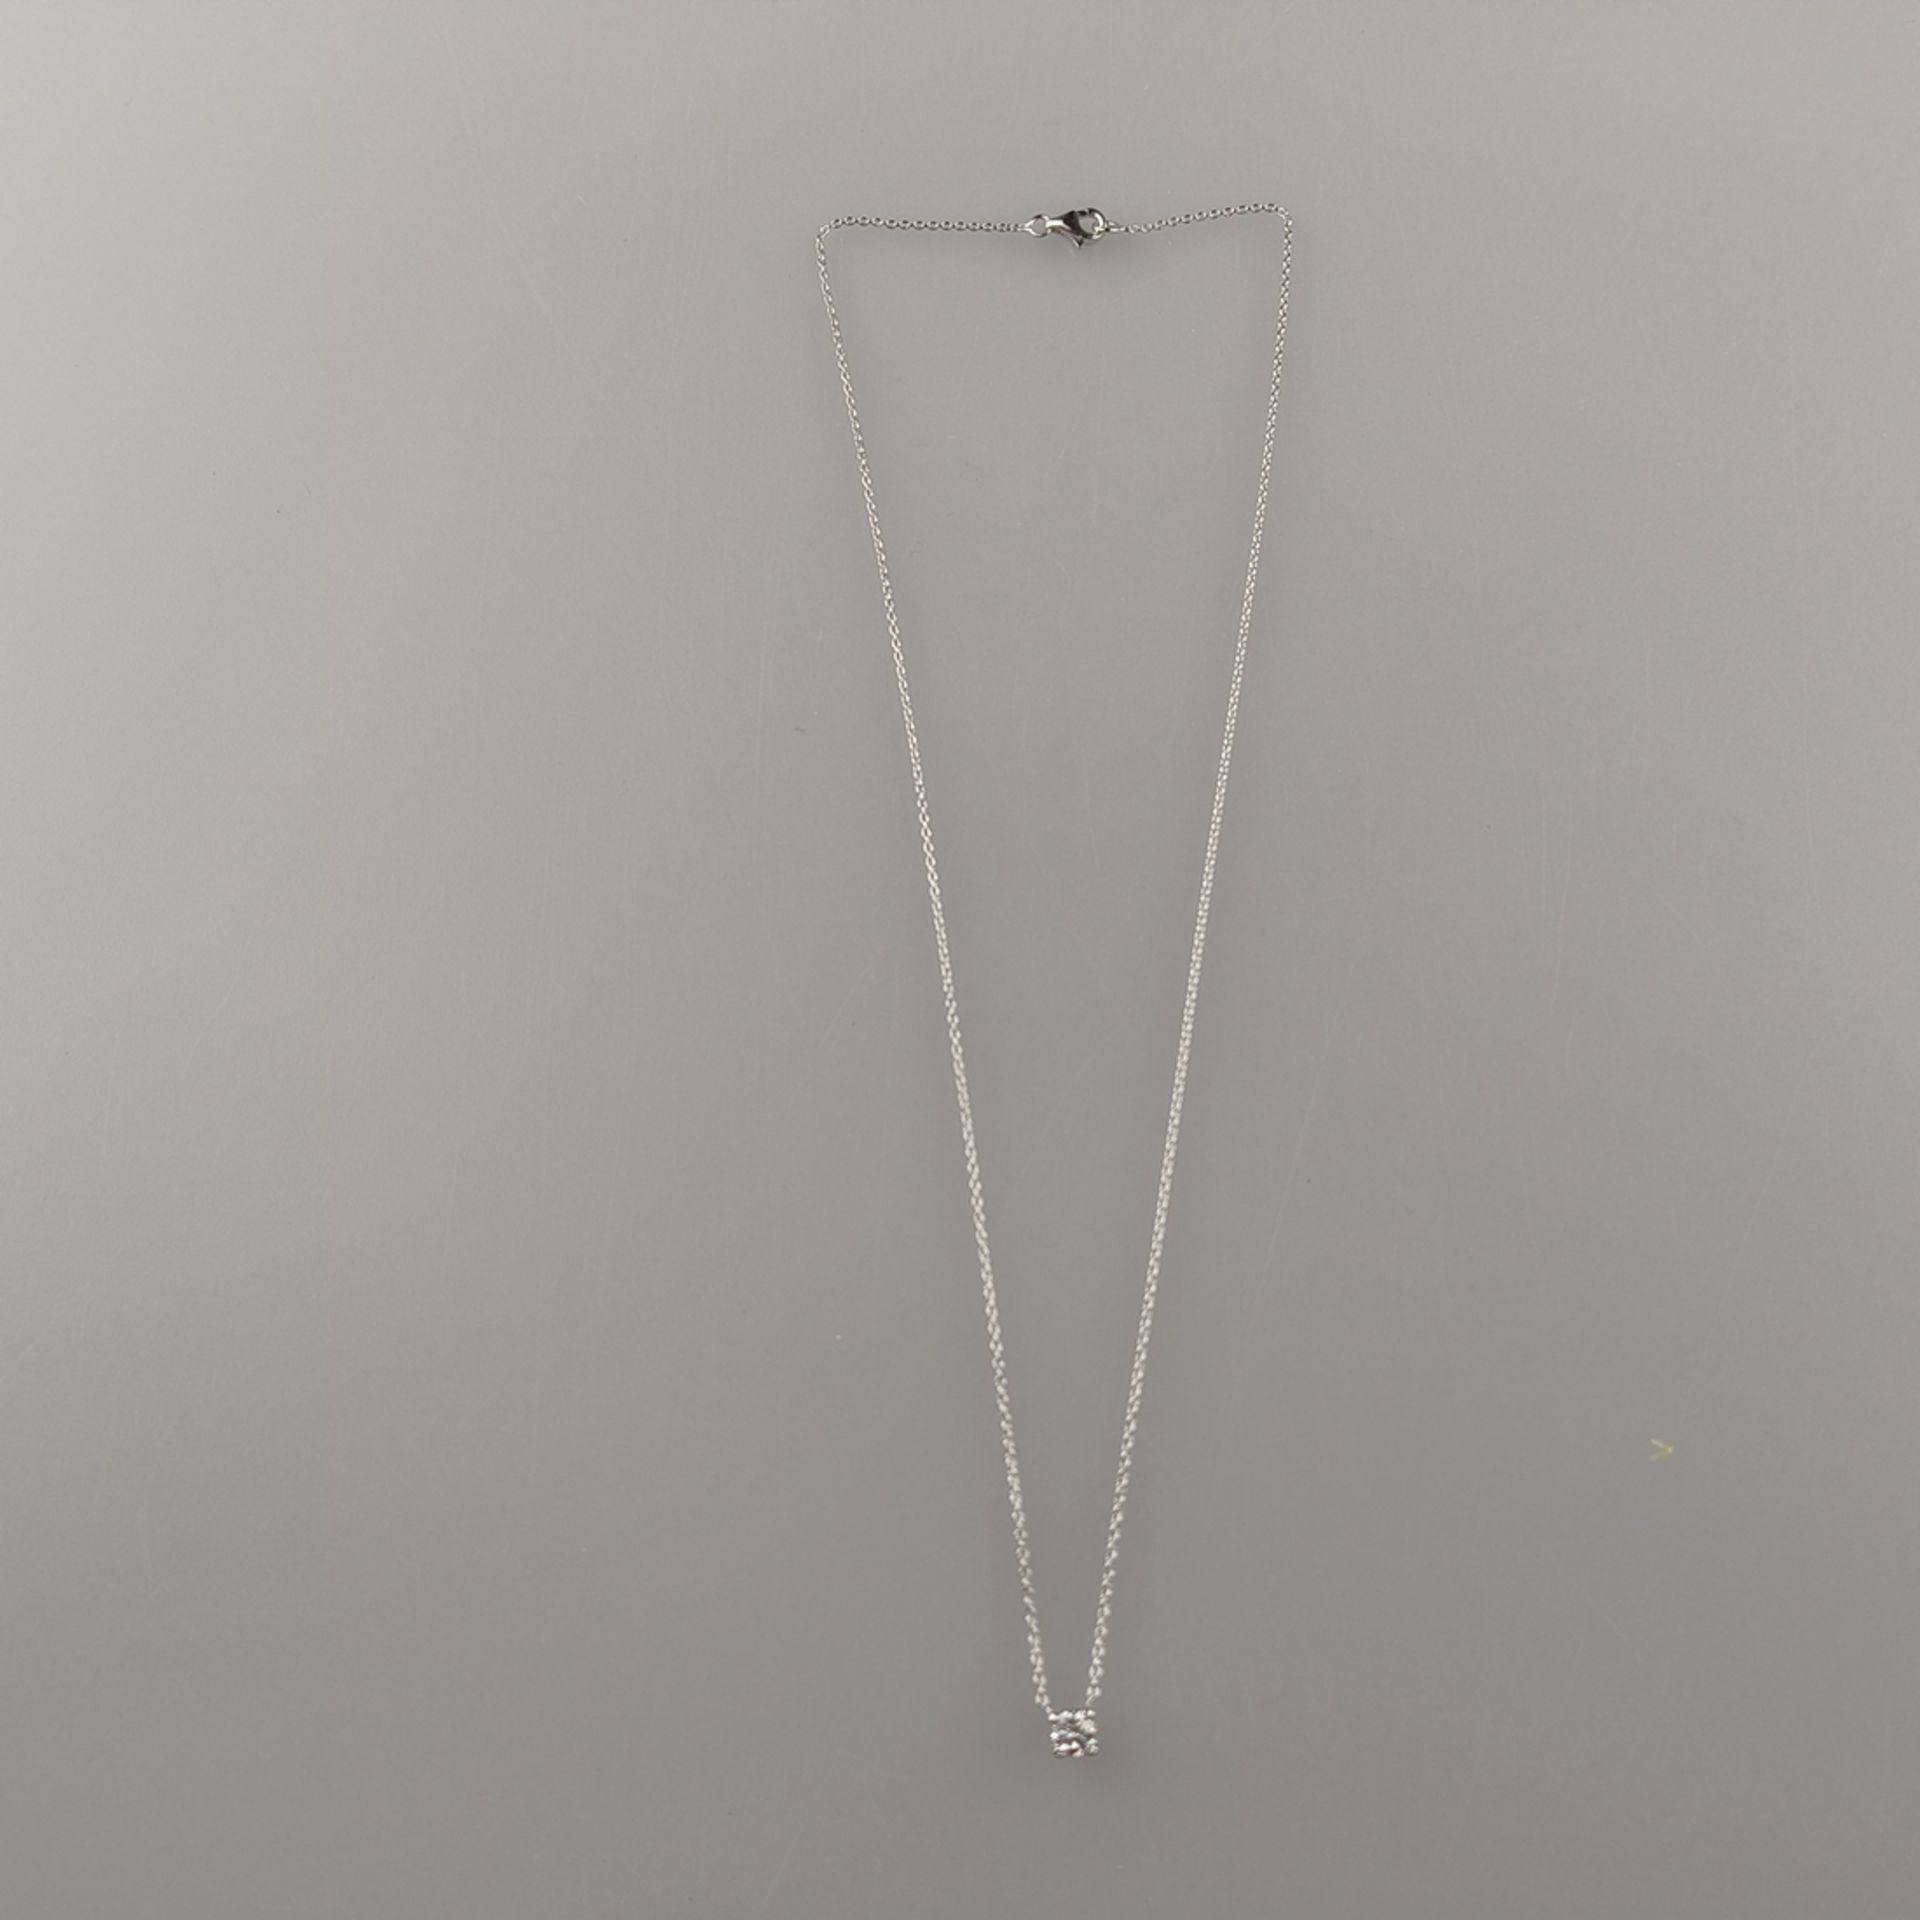 Diamantanhänger an zarter Kette - Weißgold 750/000, gestempelt, als Anhänger 1 Diamant im Brillants - Bild 4 aus 5